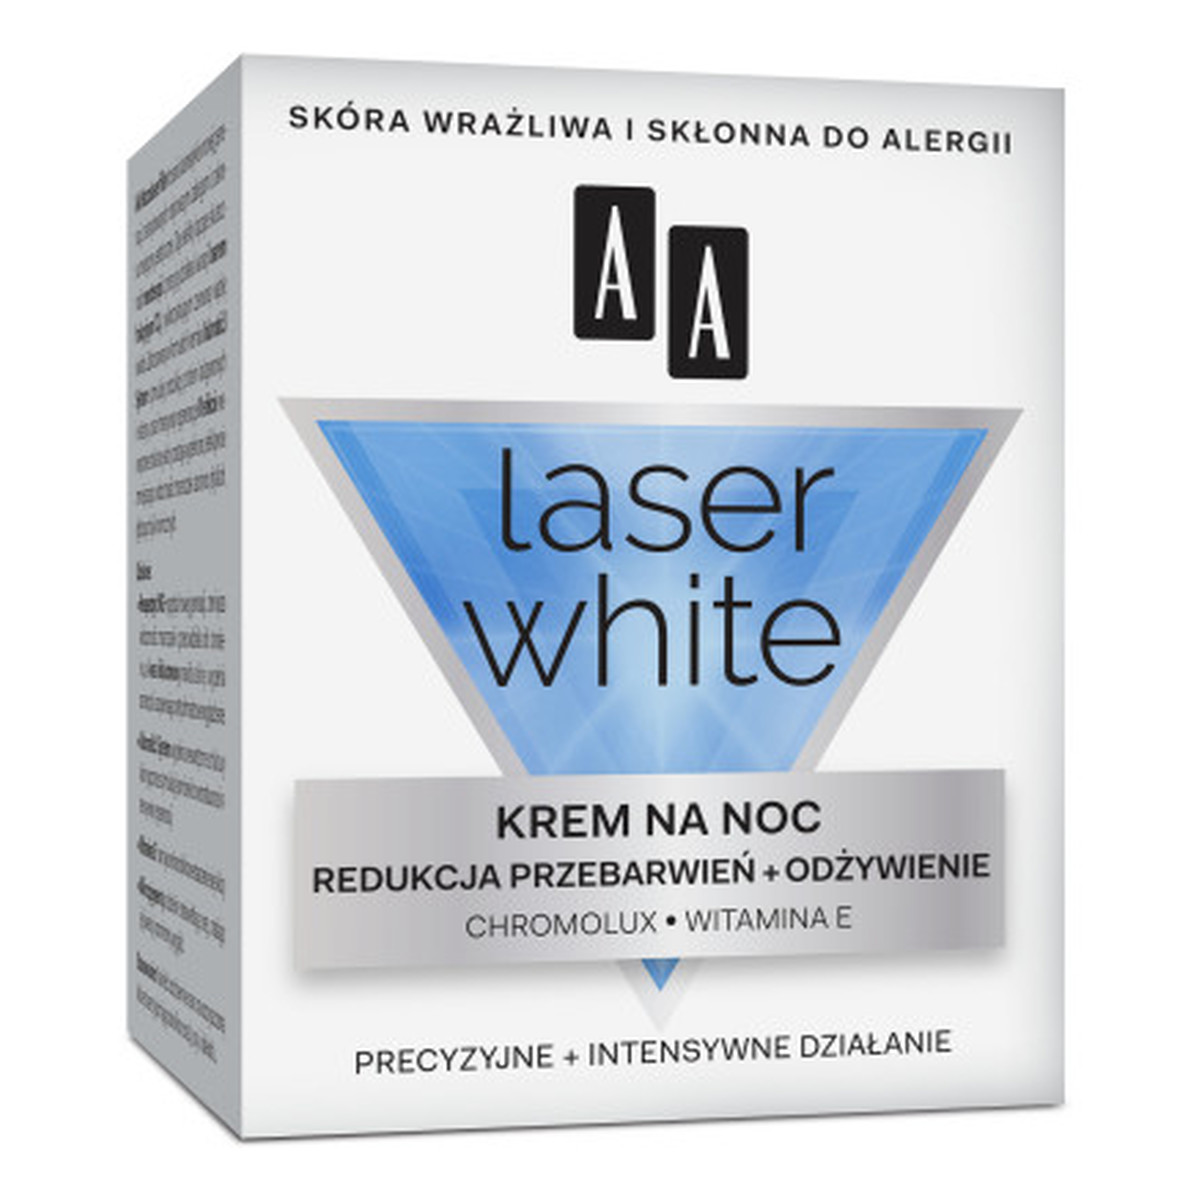 AA Laser White Krem Do Twarzy Redukcja Przebarwień + Odżywienie Na Noc 50ml